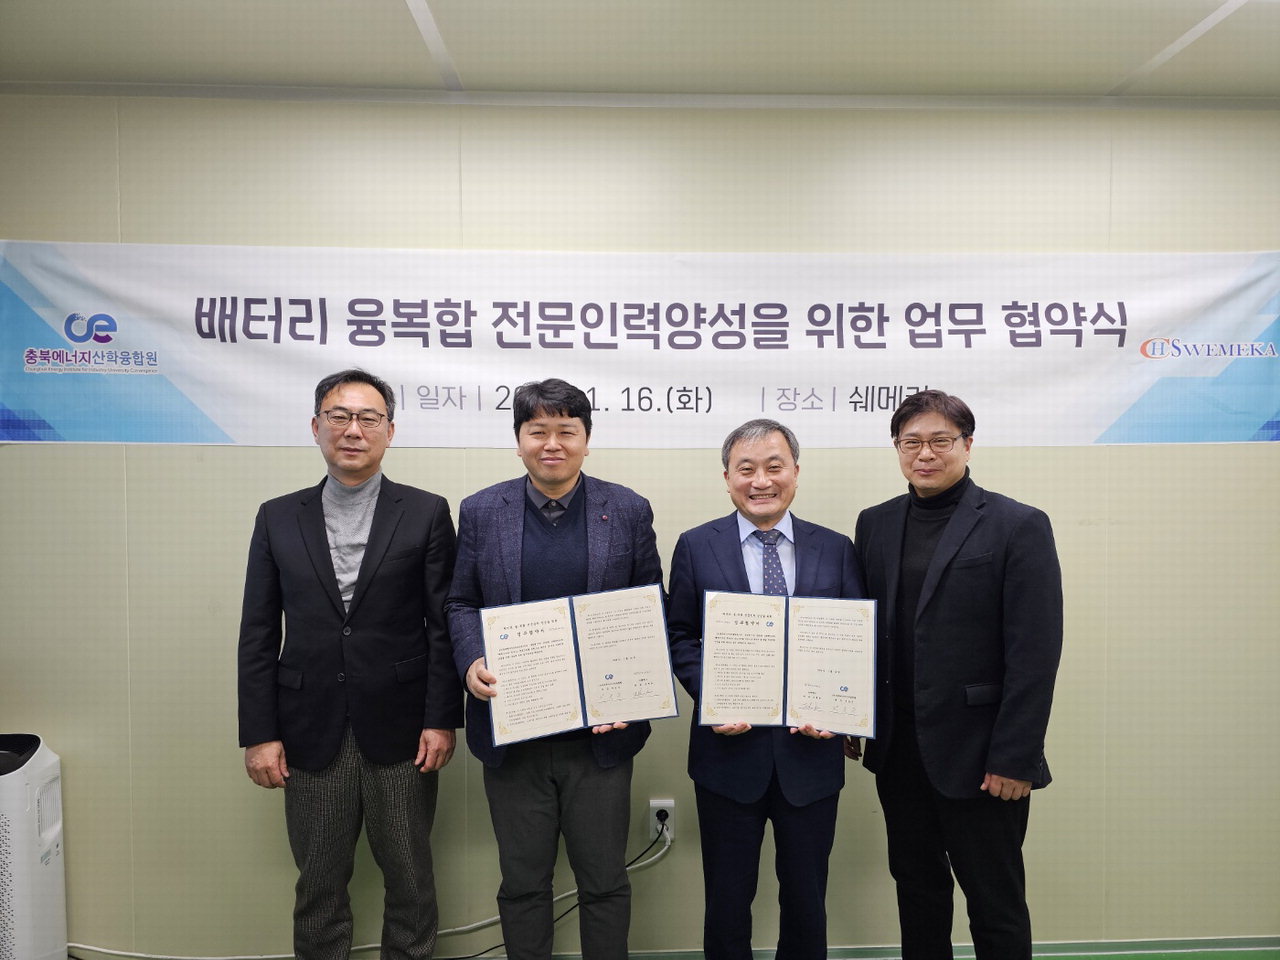 16일 충북에너지산학융합원과 쉐메카가 배터리 융복합 전문인력양성을 위한 업무협약을 체결했다. /충북도